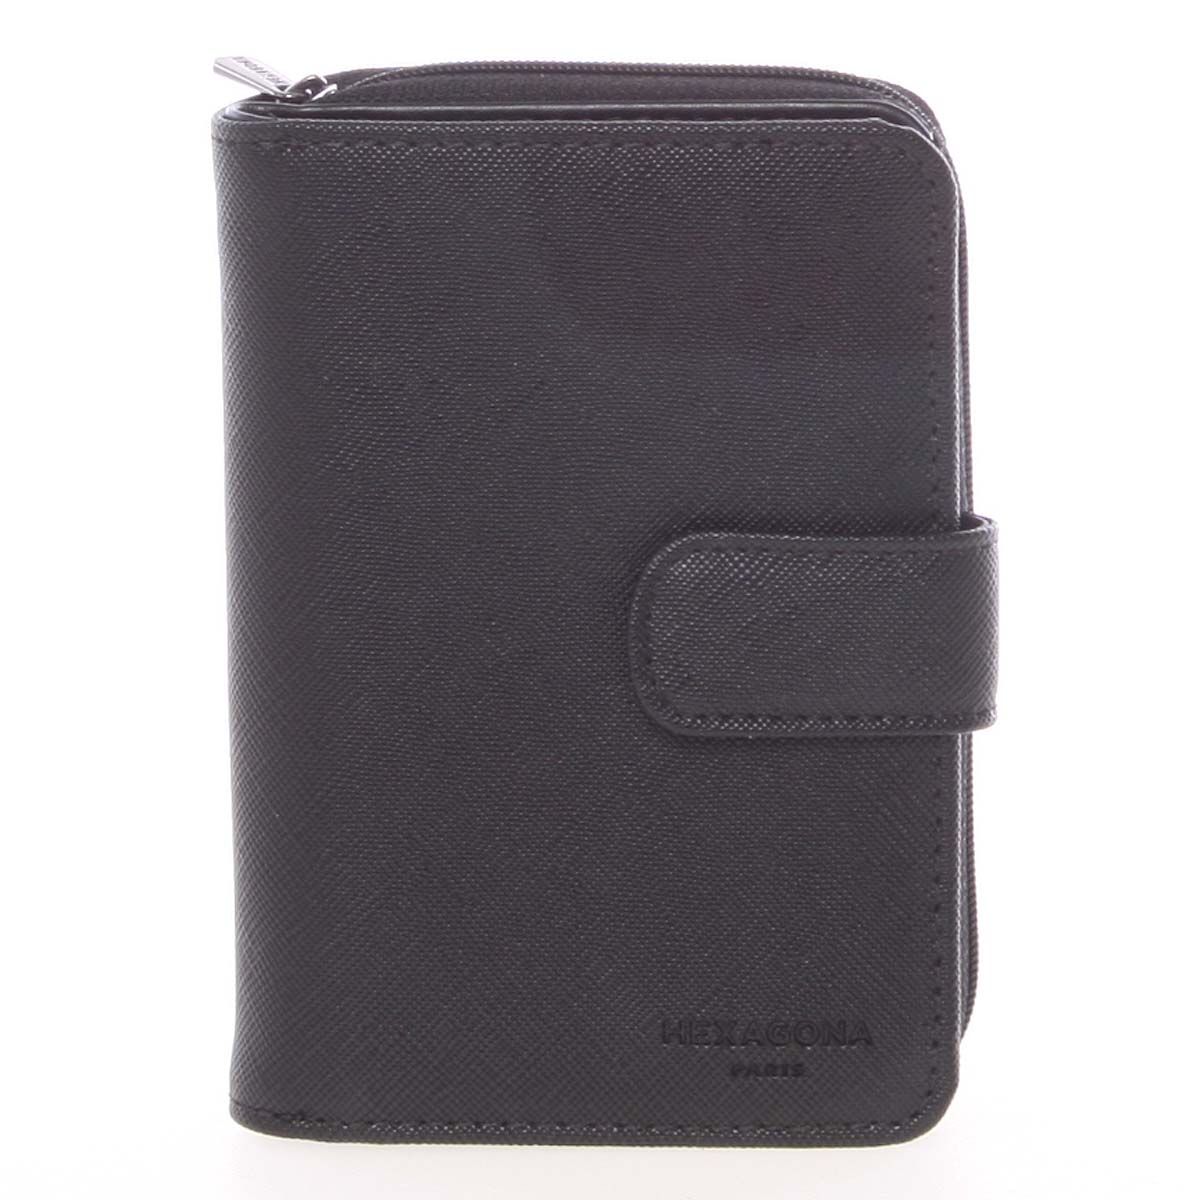 Luxusní dámská dvoudílná černá peněženka saffiano - HEXAGONA Ritsa